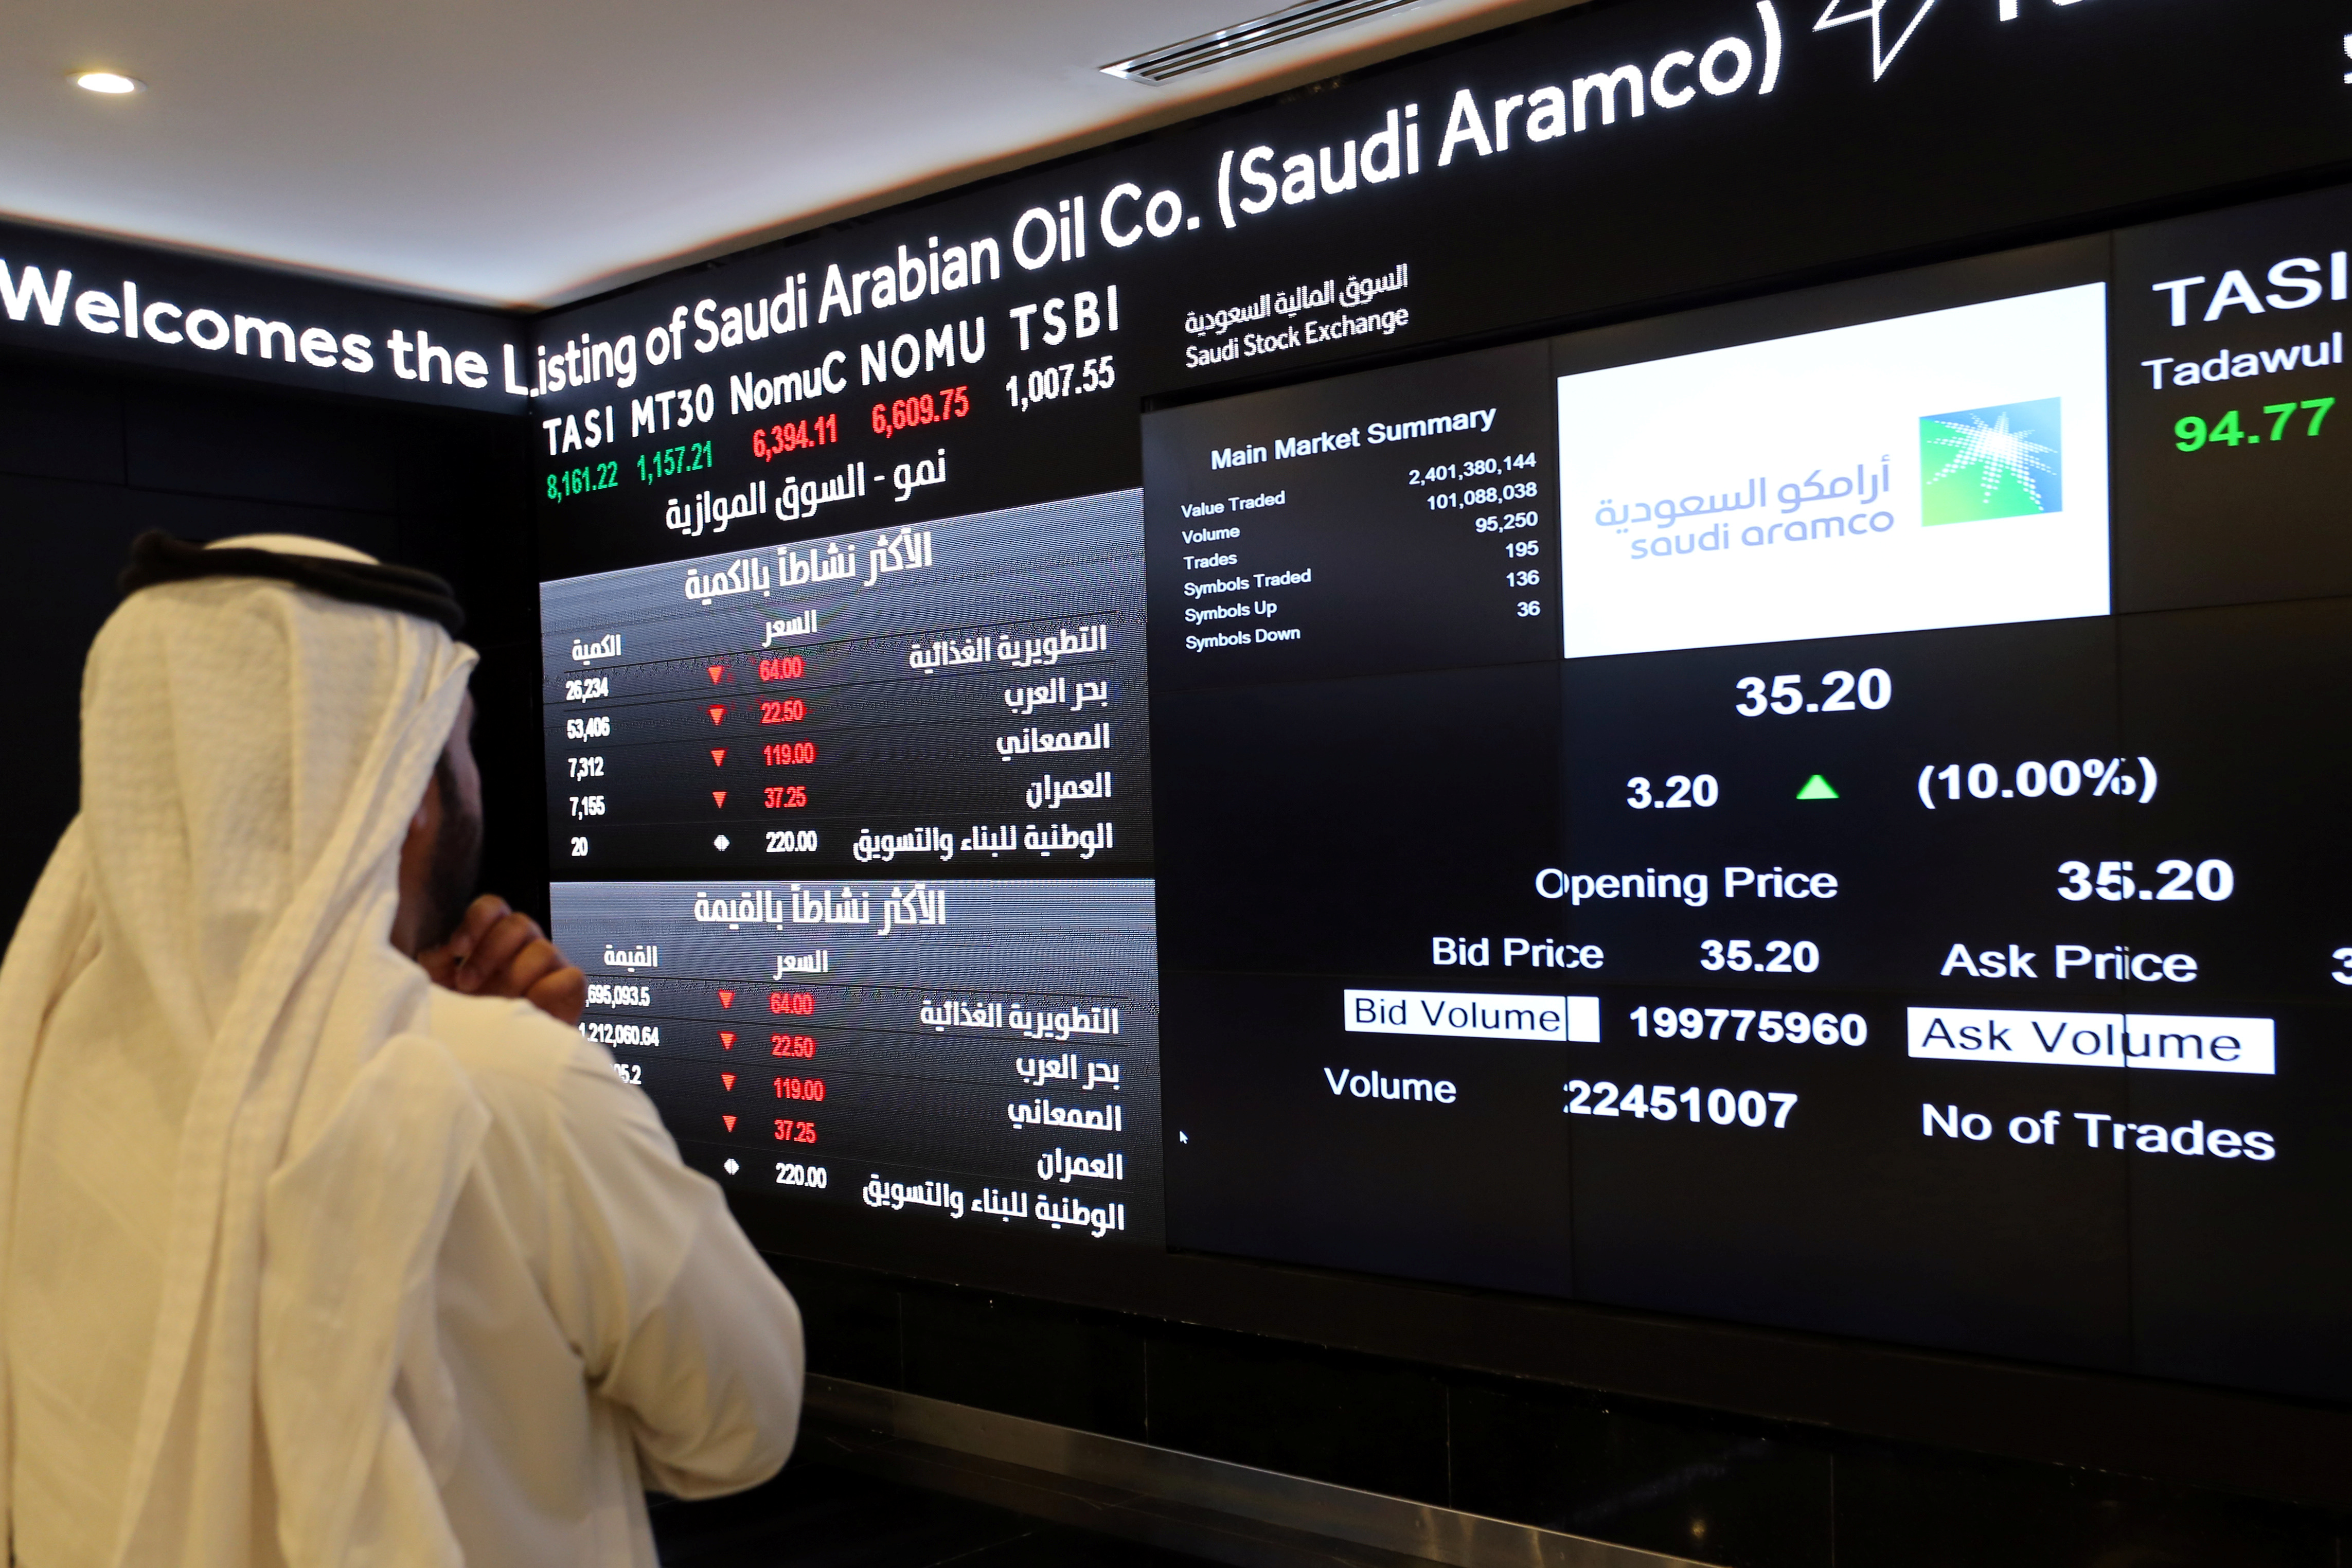 Цены нефть саудовская аравия. Акции Саудовской Аравии. Сауди Арамко акции. Суверенный фонд Саудовской Аравии. Суверенный фонд Саудовской Аравии (PIF).